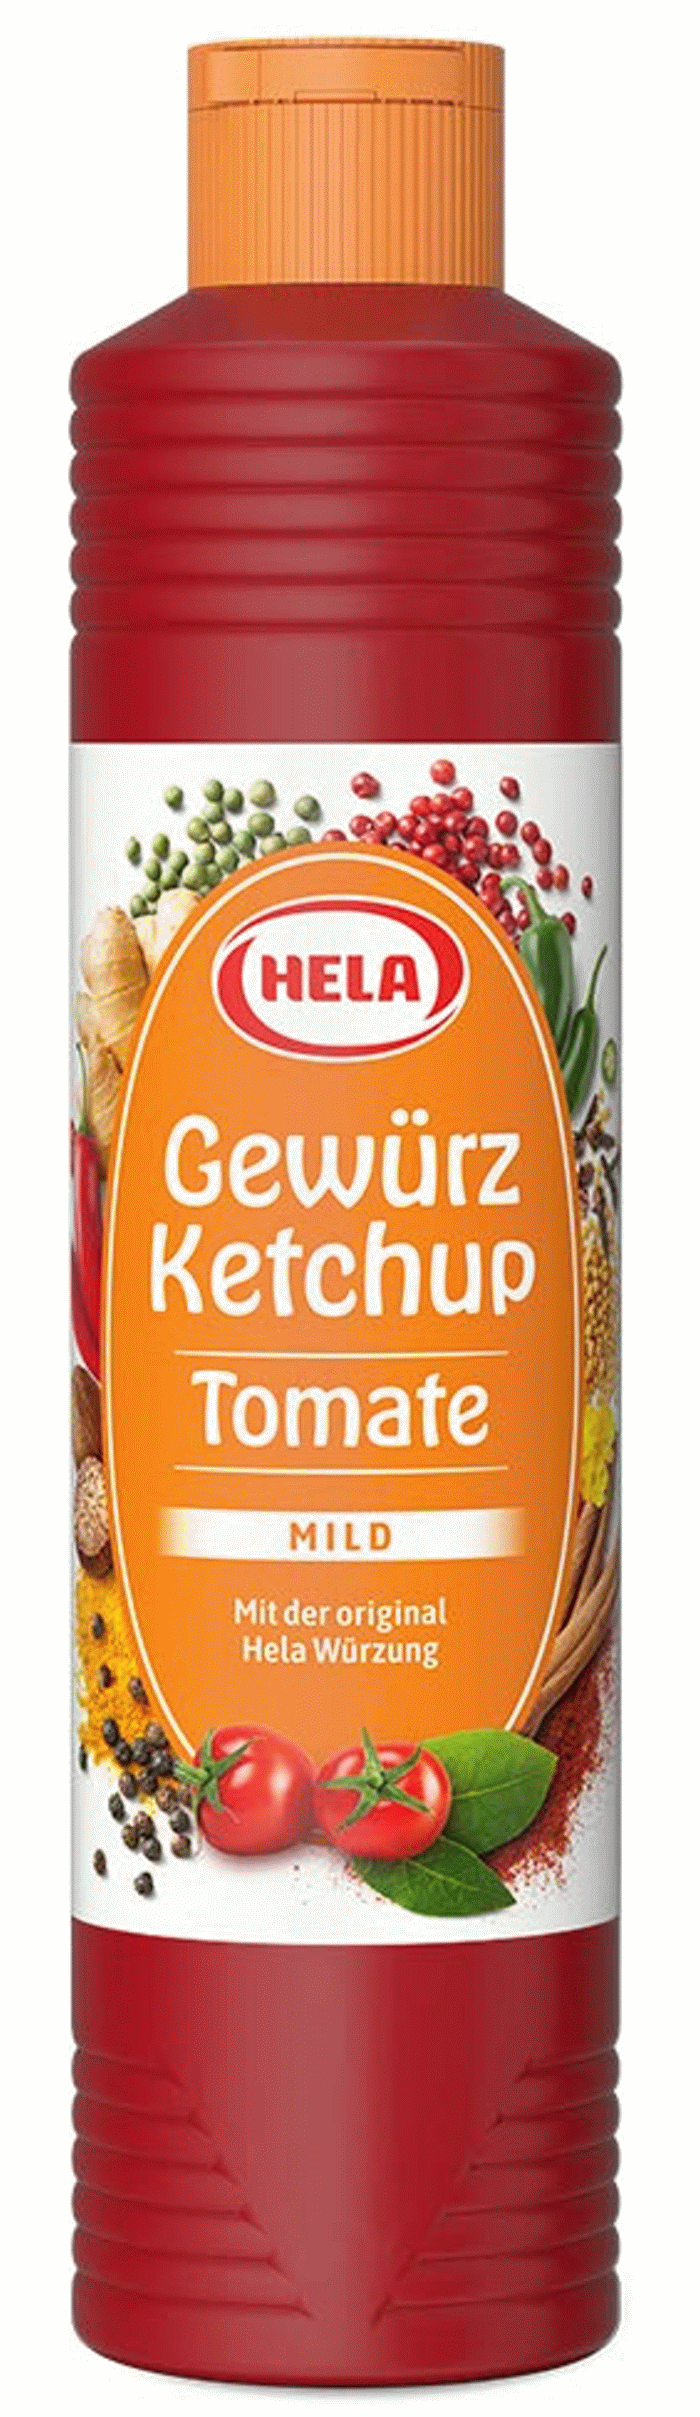 Hela Gewürz Ketchup Tomate Mild 800ml